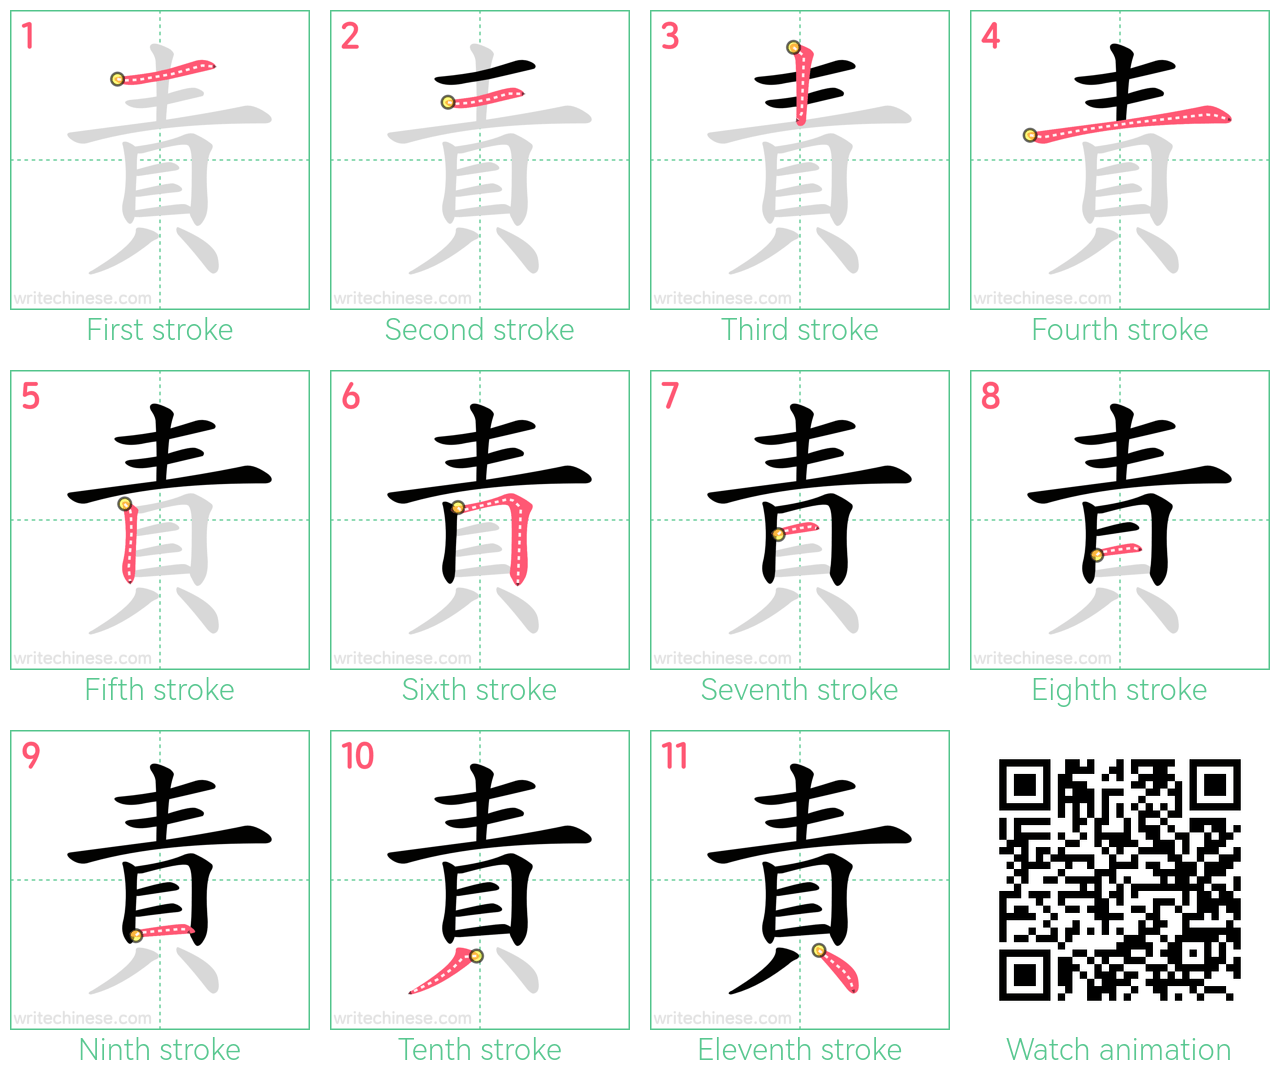 責 step-by-step stroke order diagrams